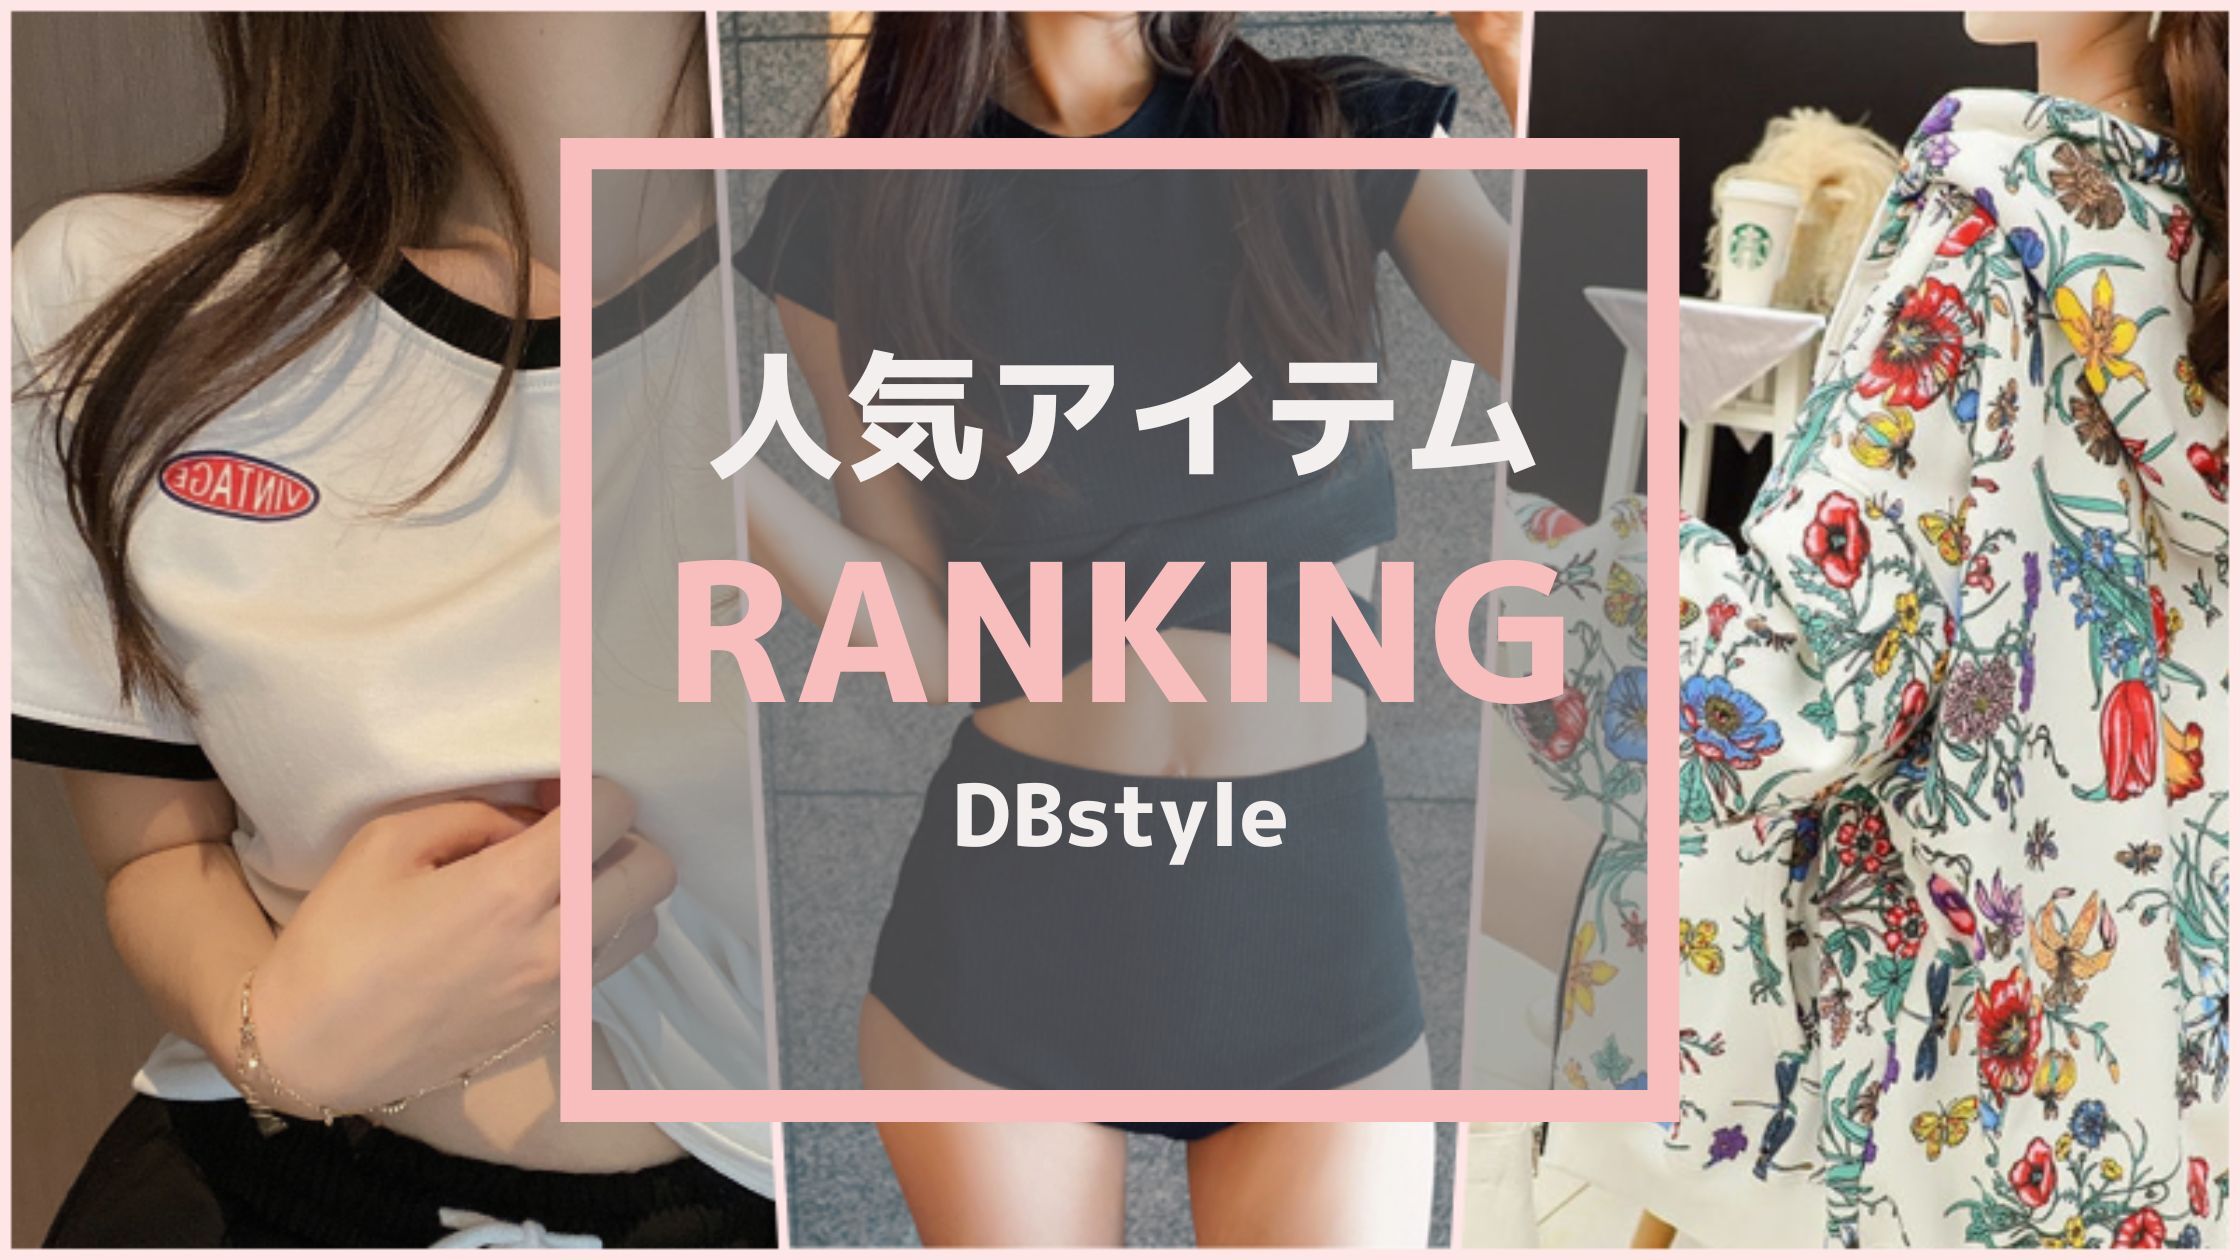 DBstyle 海外アパレル 韓国ファッション